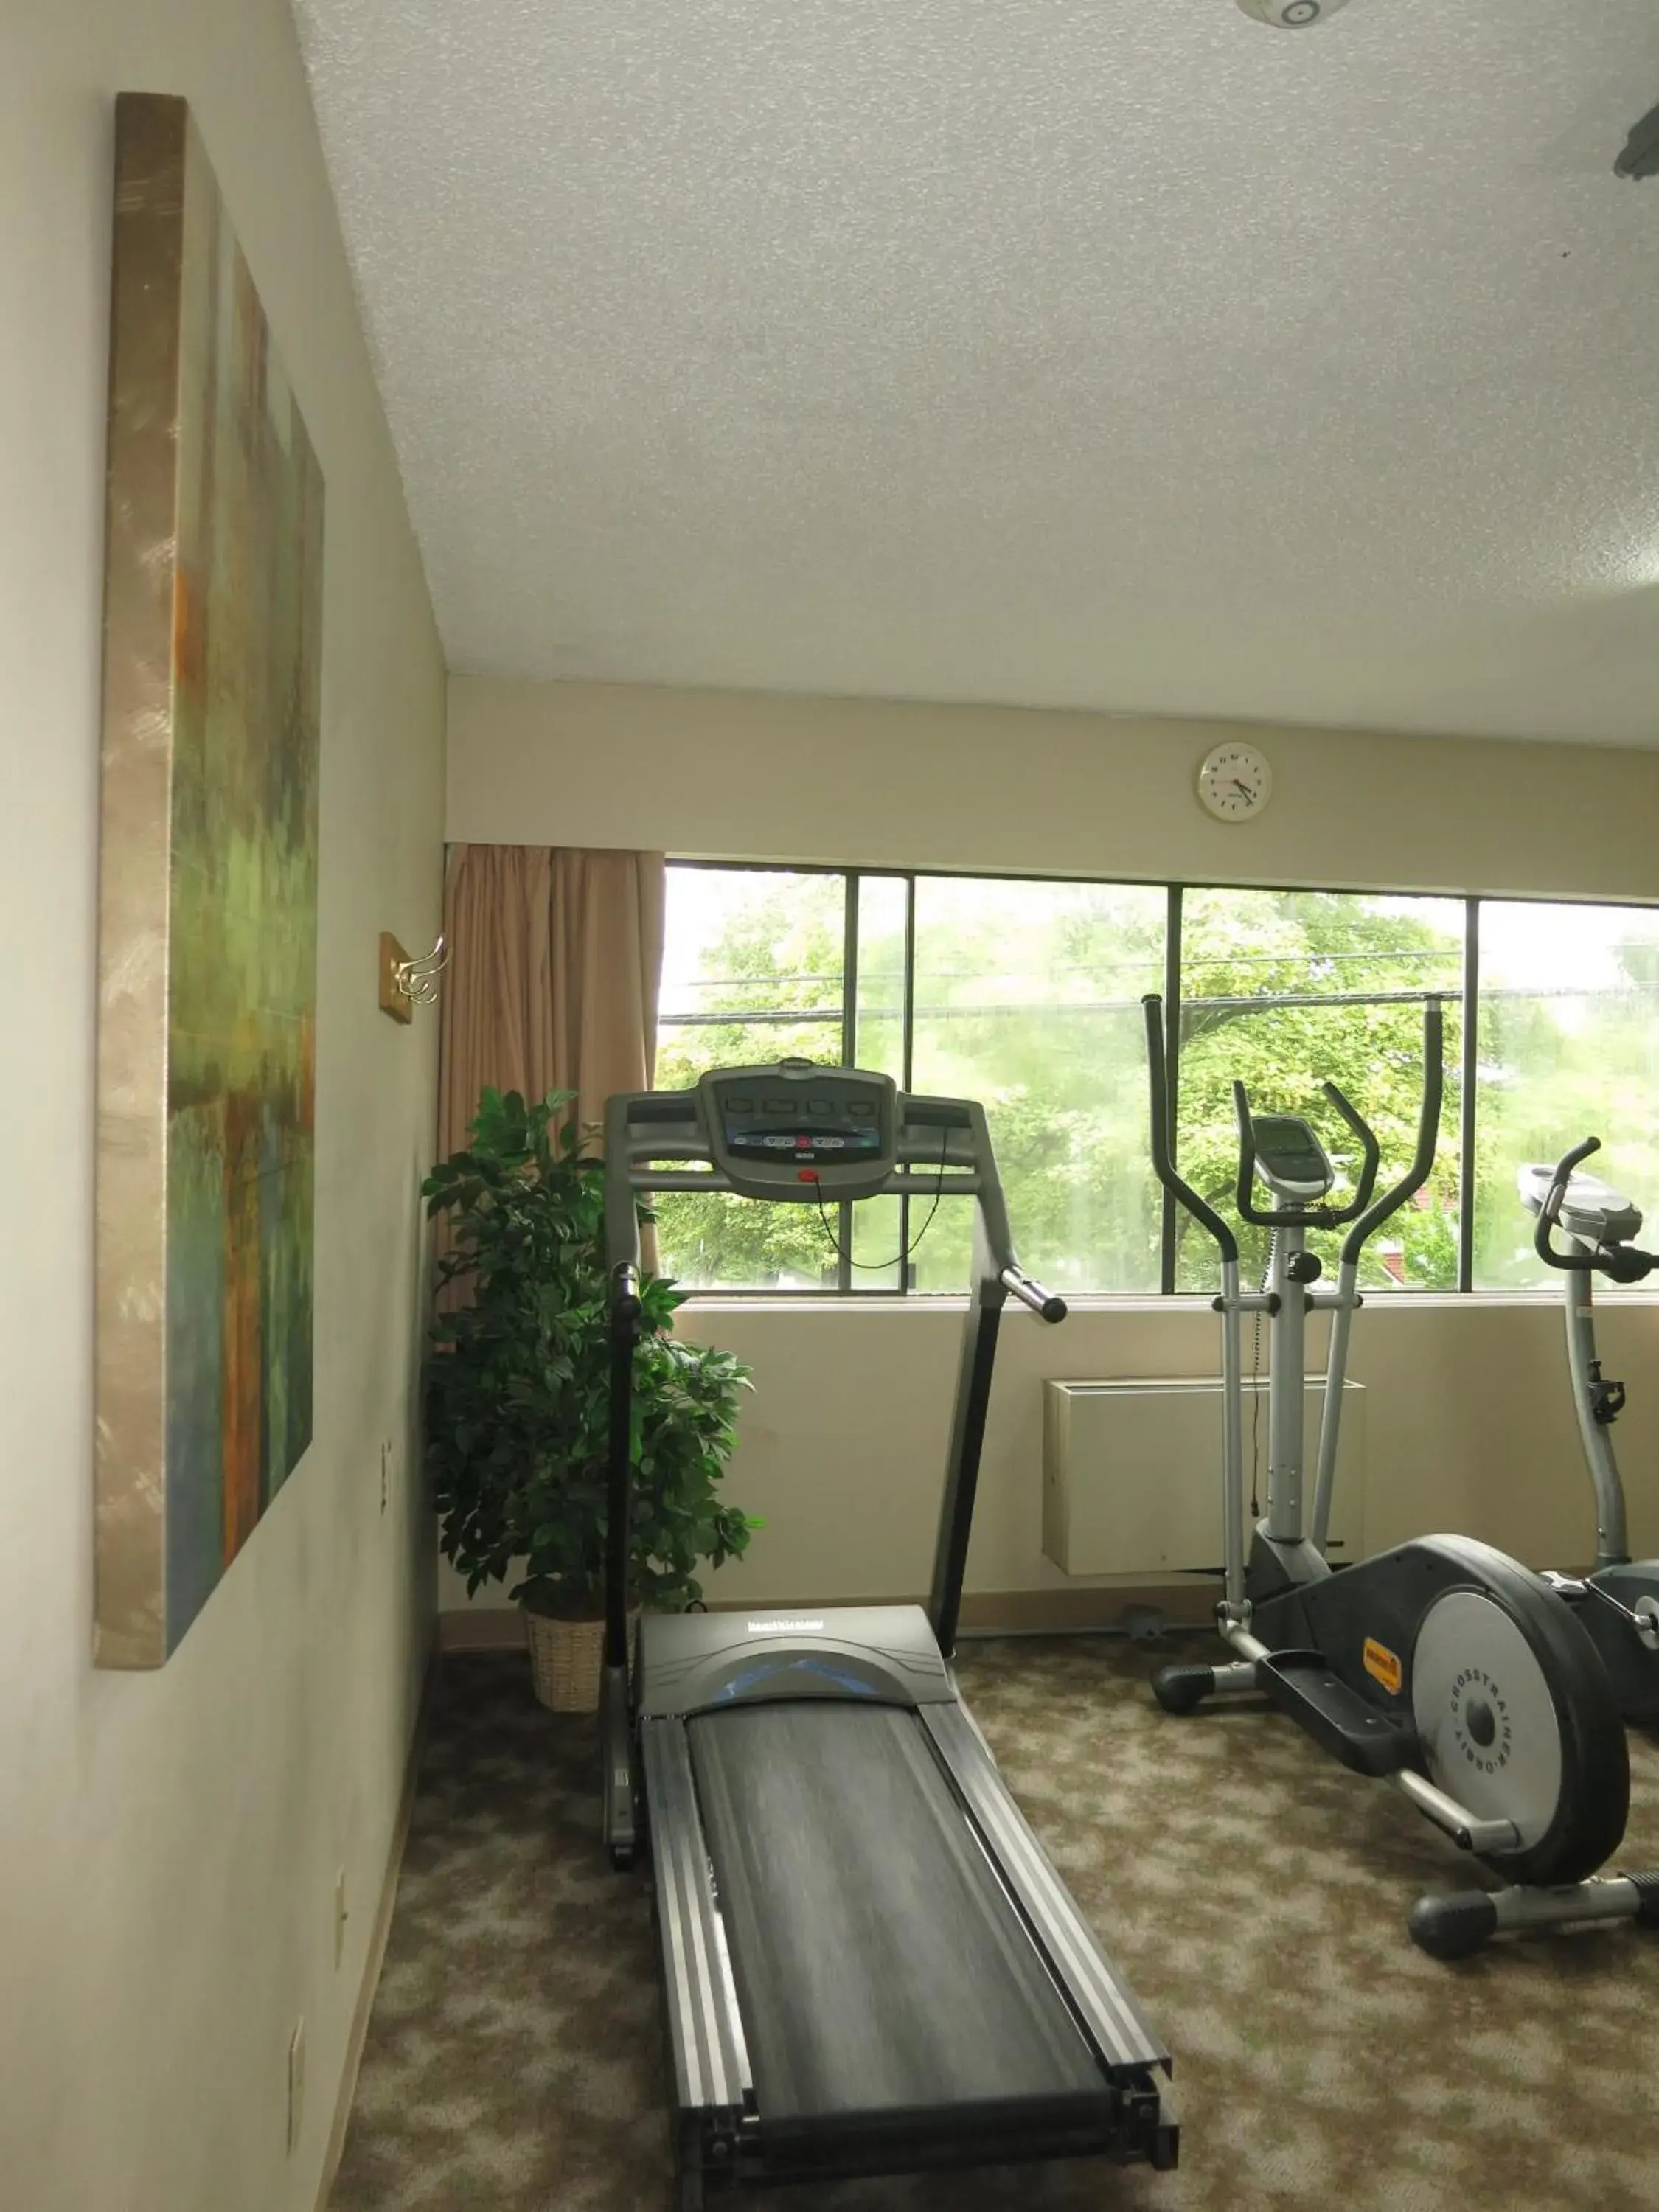 Fitness centre/facilities, Fitness Center/Facilities in Cassandra Hotel